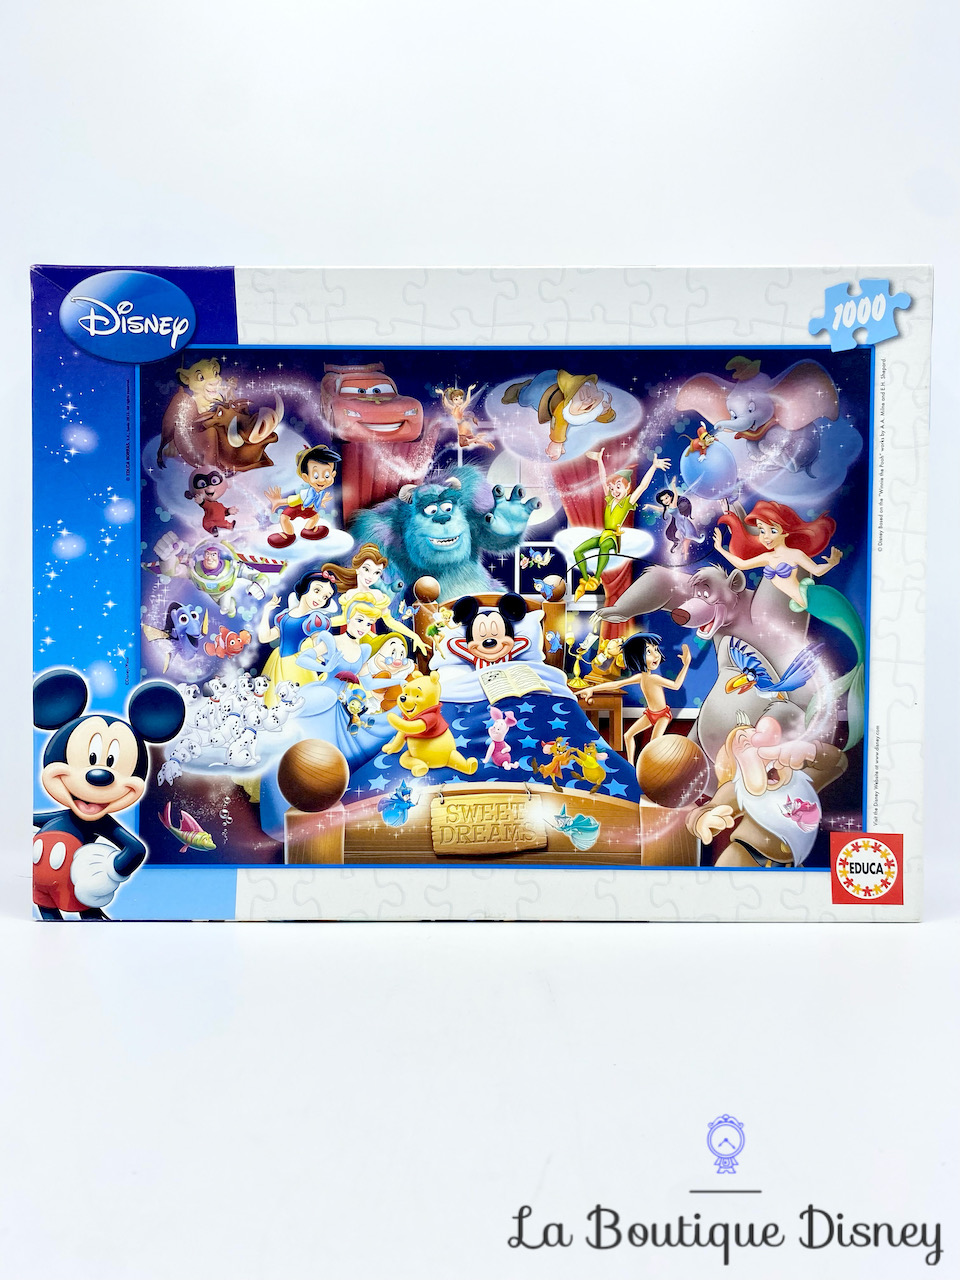 Puzzle 2 x 20 pièces : Disney : Minnie - Jeux et jouets Educa - Avenue des  Jeux